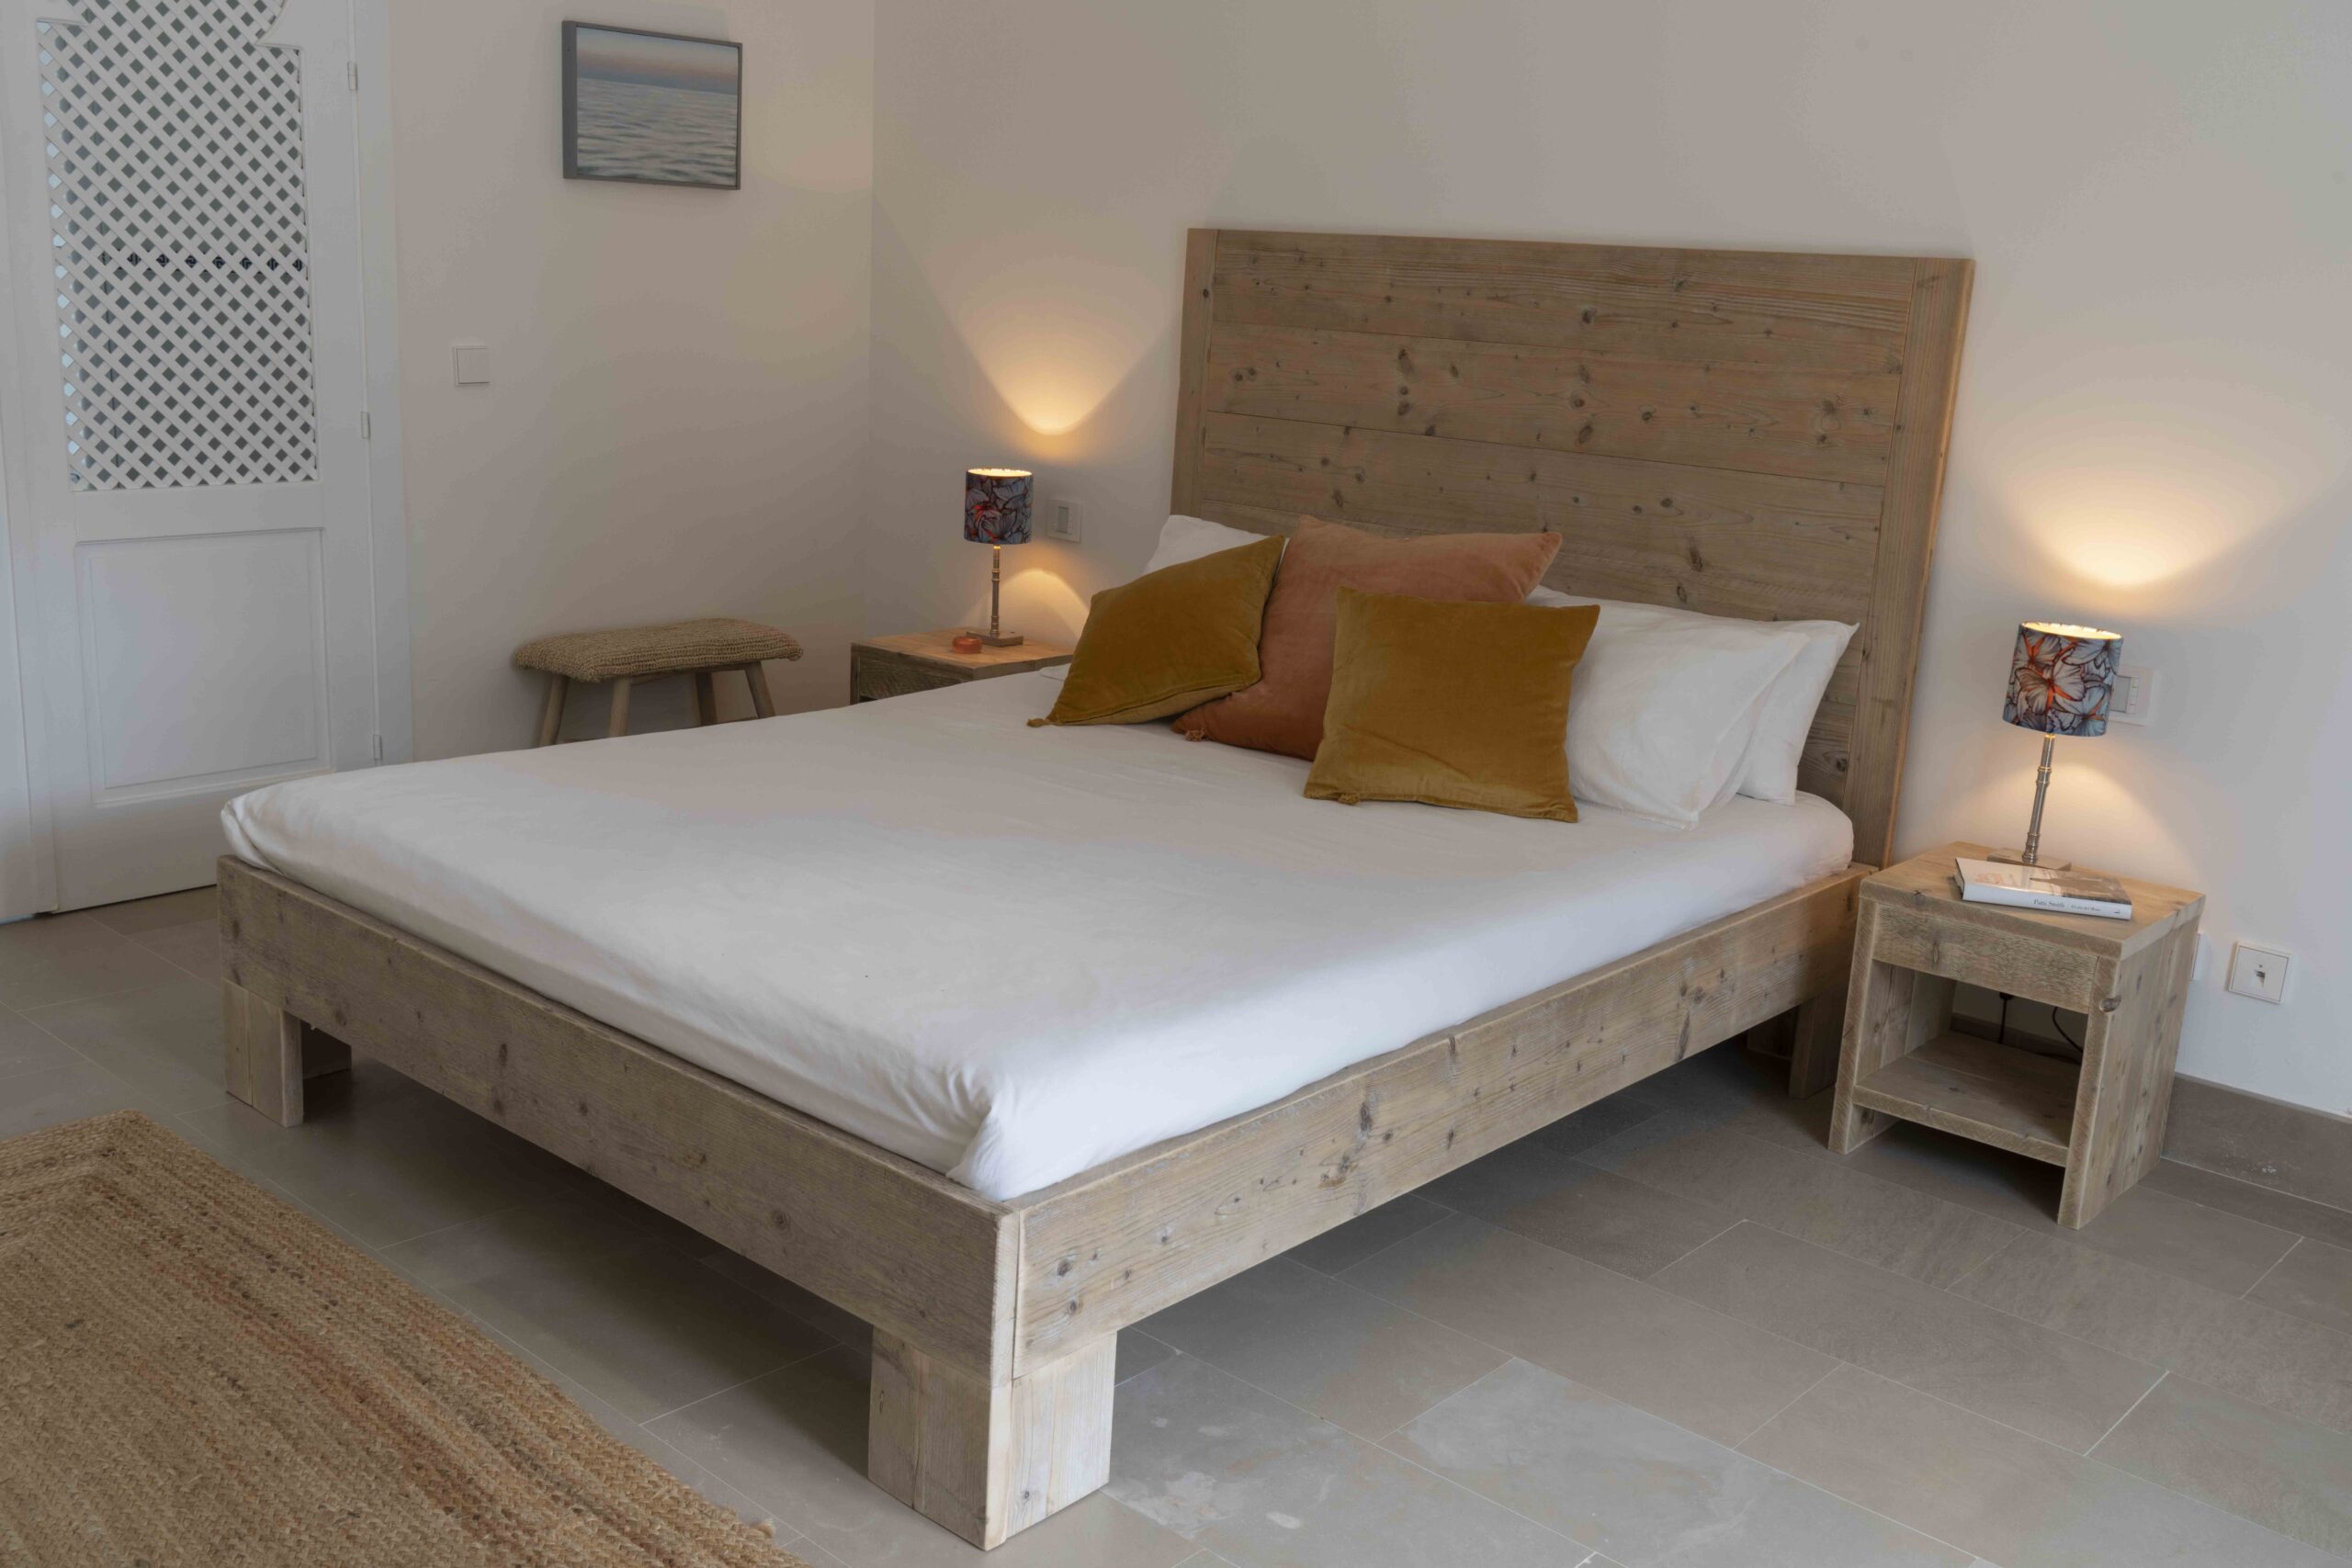 Precioso dormitorio nórdico con listones y banco de madera